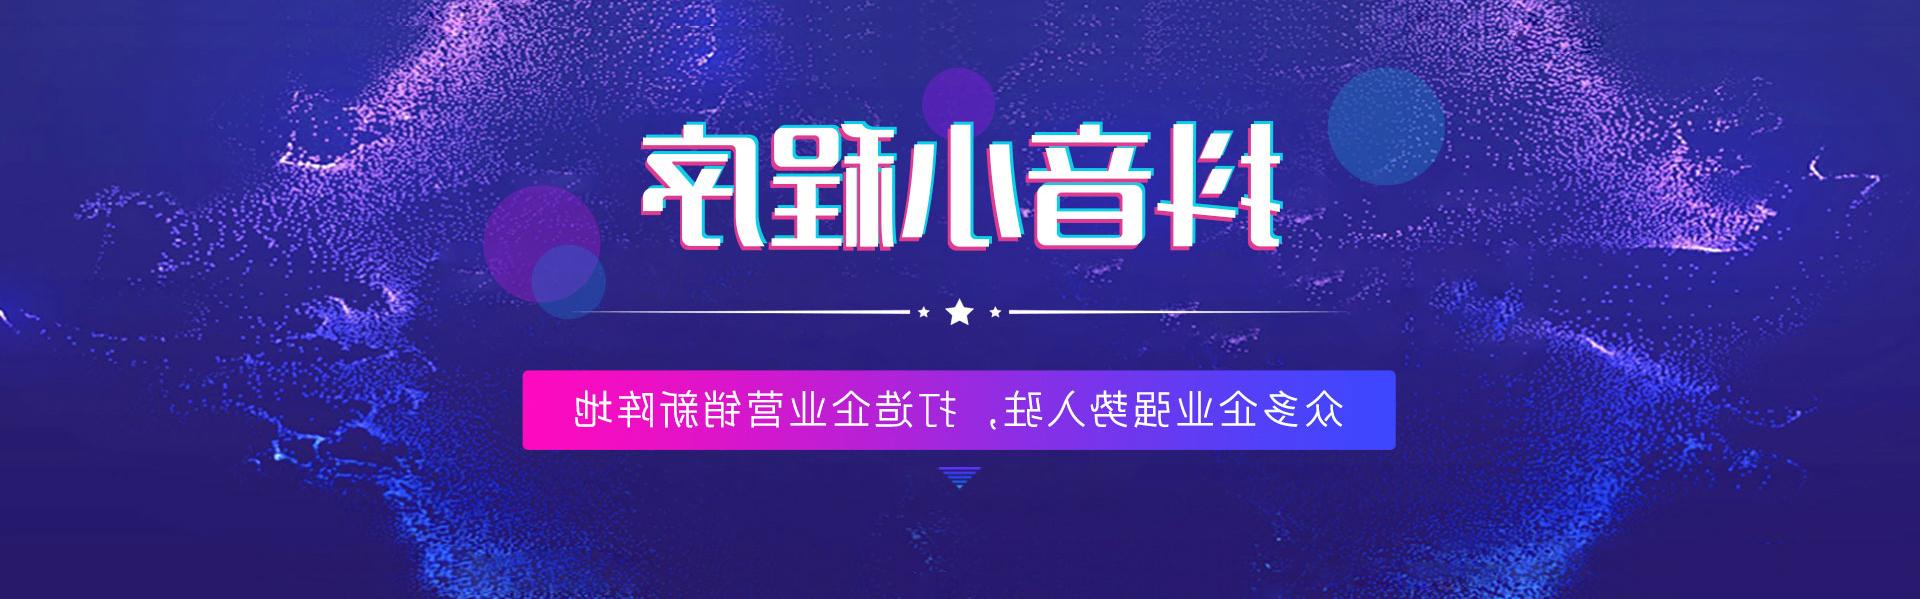 淮北抖音世界杯足彩app,打造企业营销新阵地